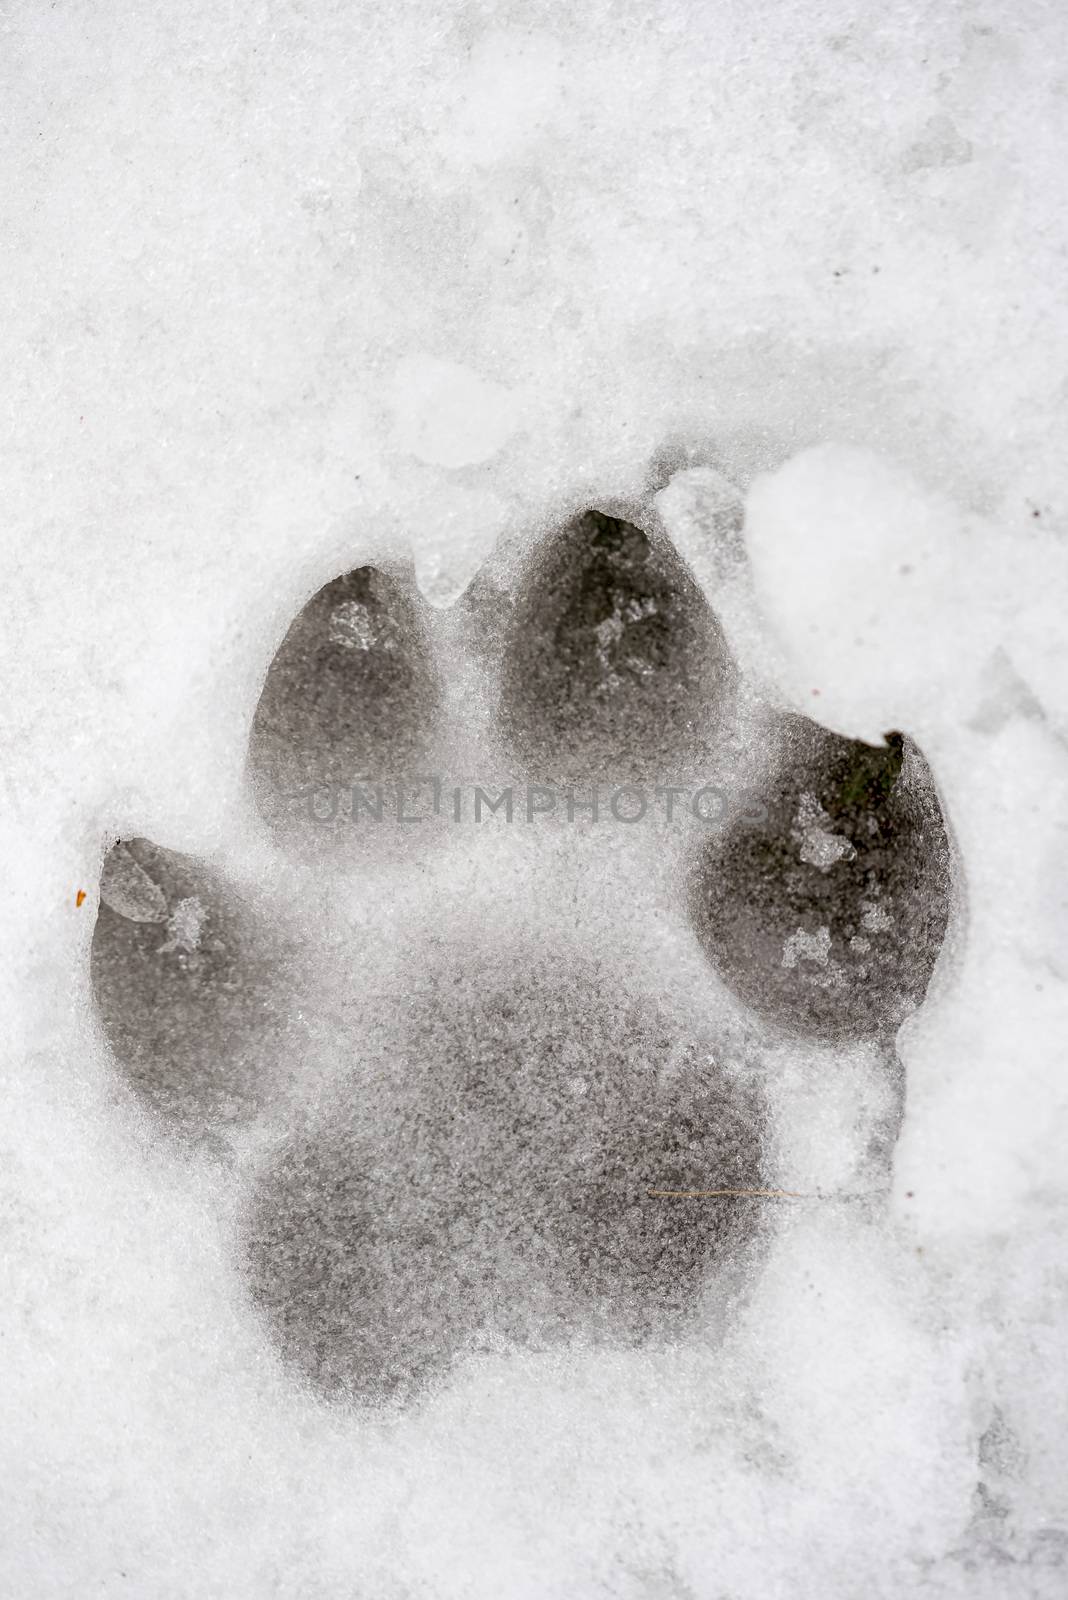 Animal Print on the Snow by MaxalTamor